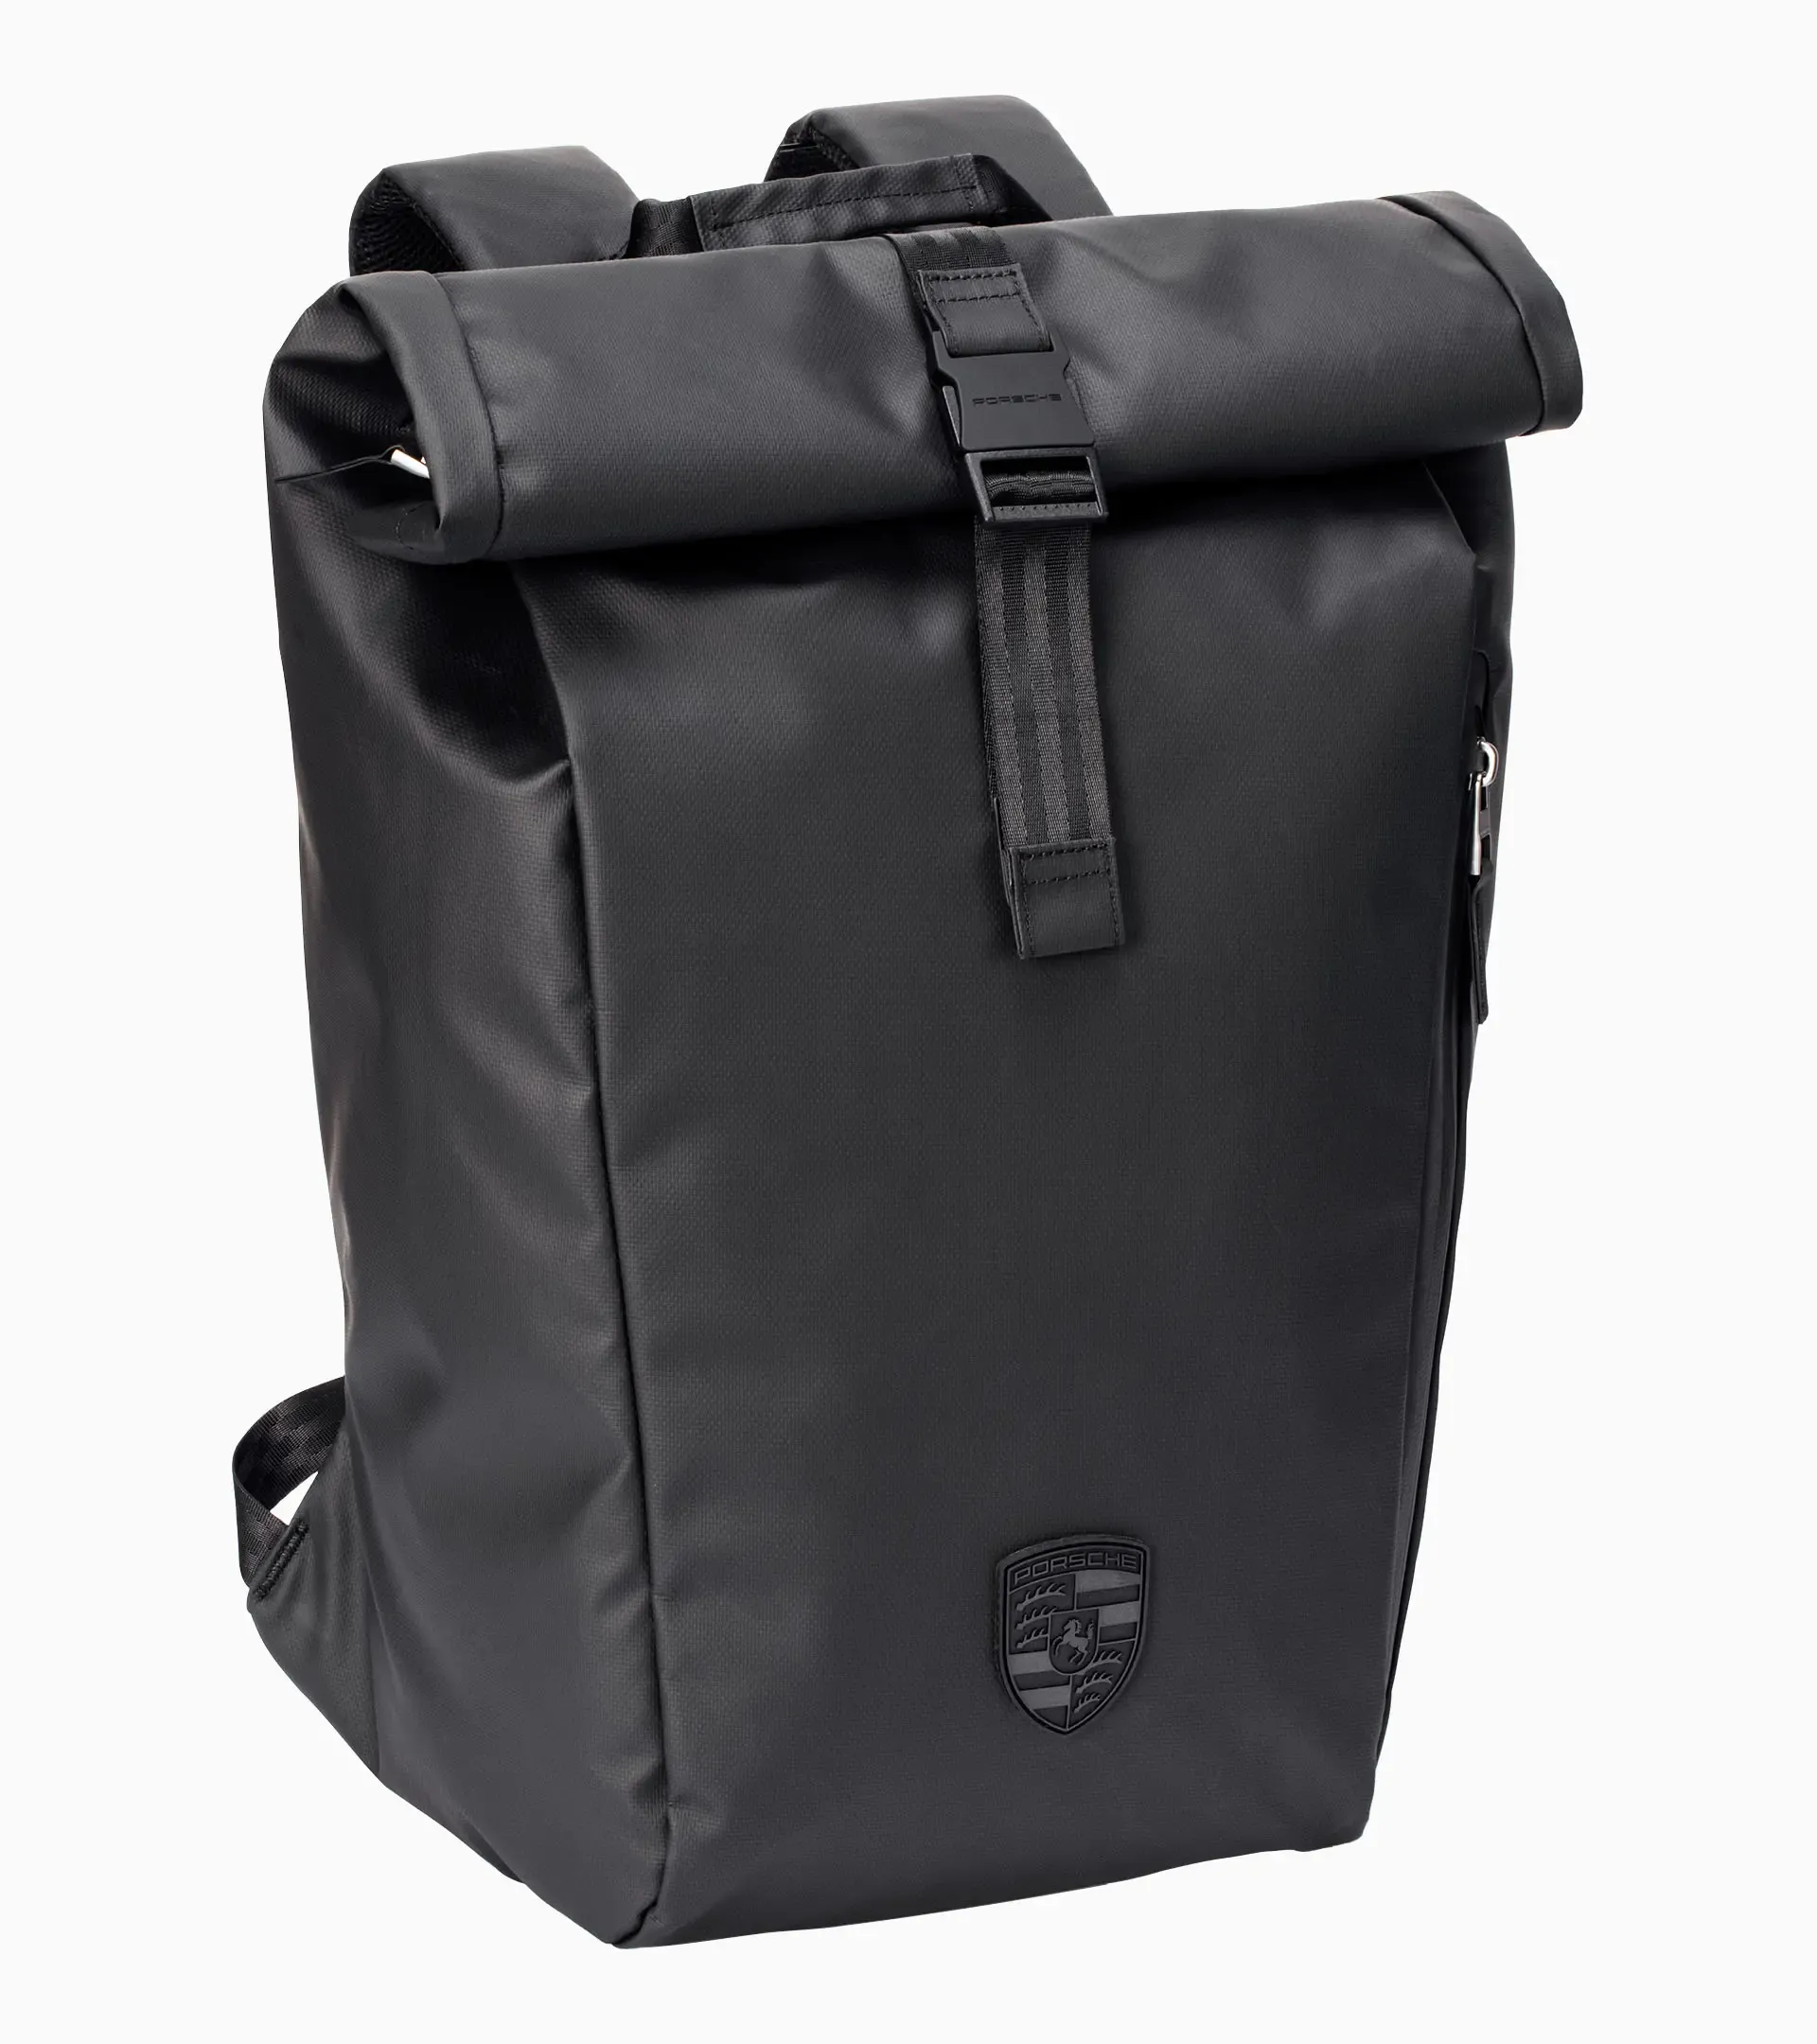 718 backpack | PORSCHE SHOP